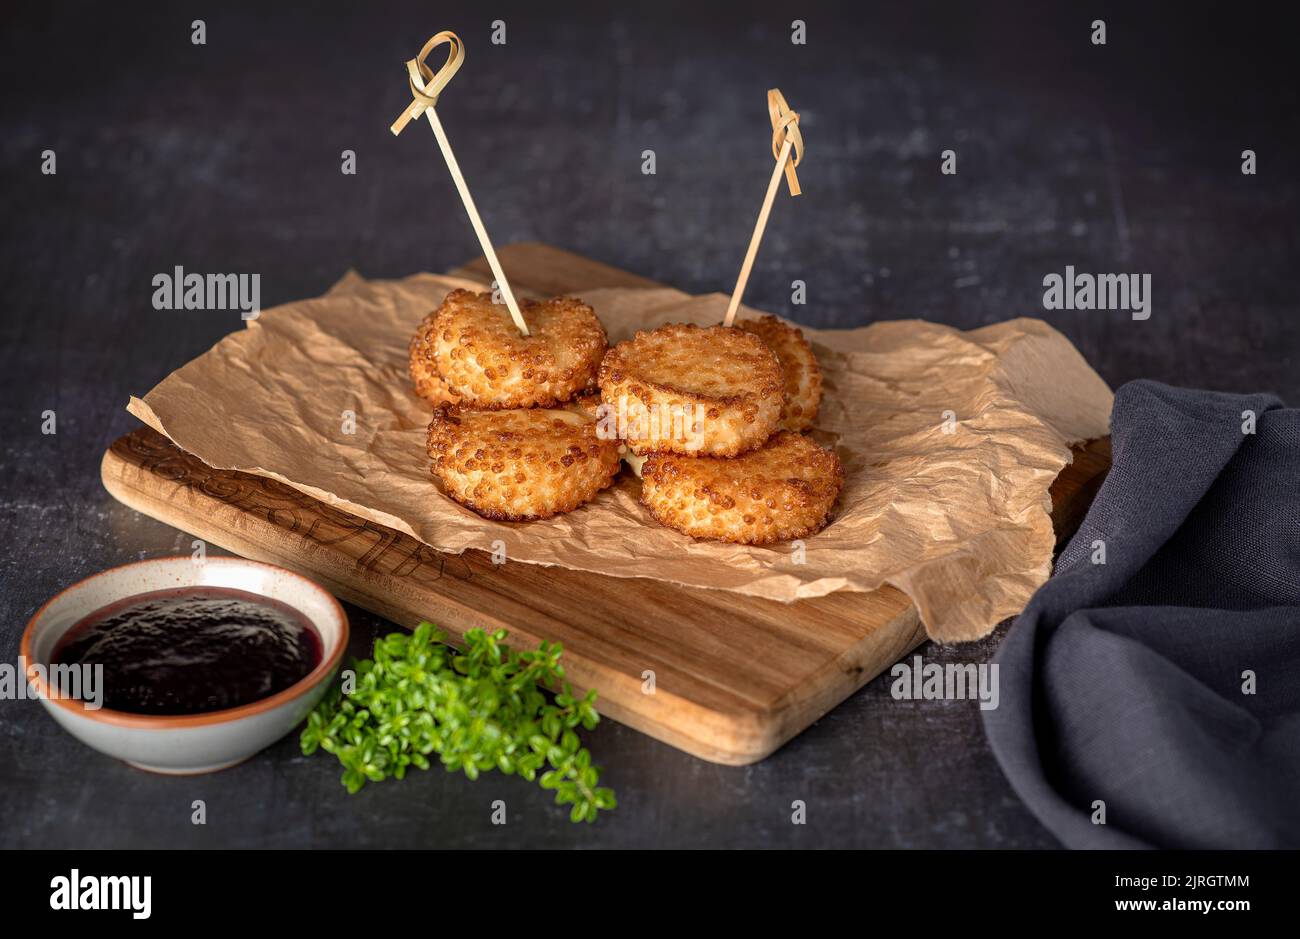 Photographie alimentaire de fromage croustillant, frit, brie, sauce, thym Banque D'Images